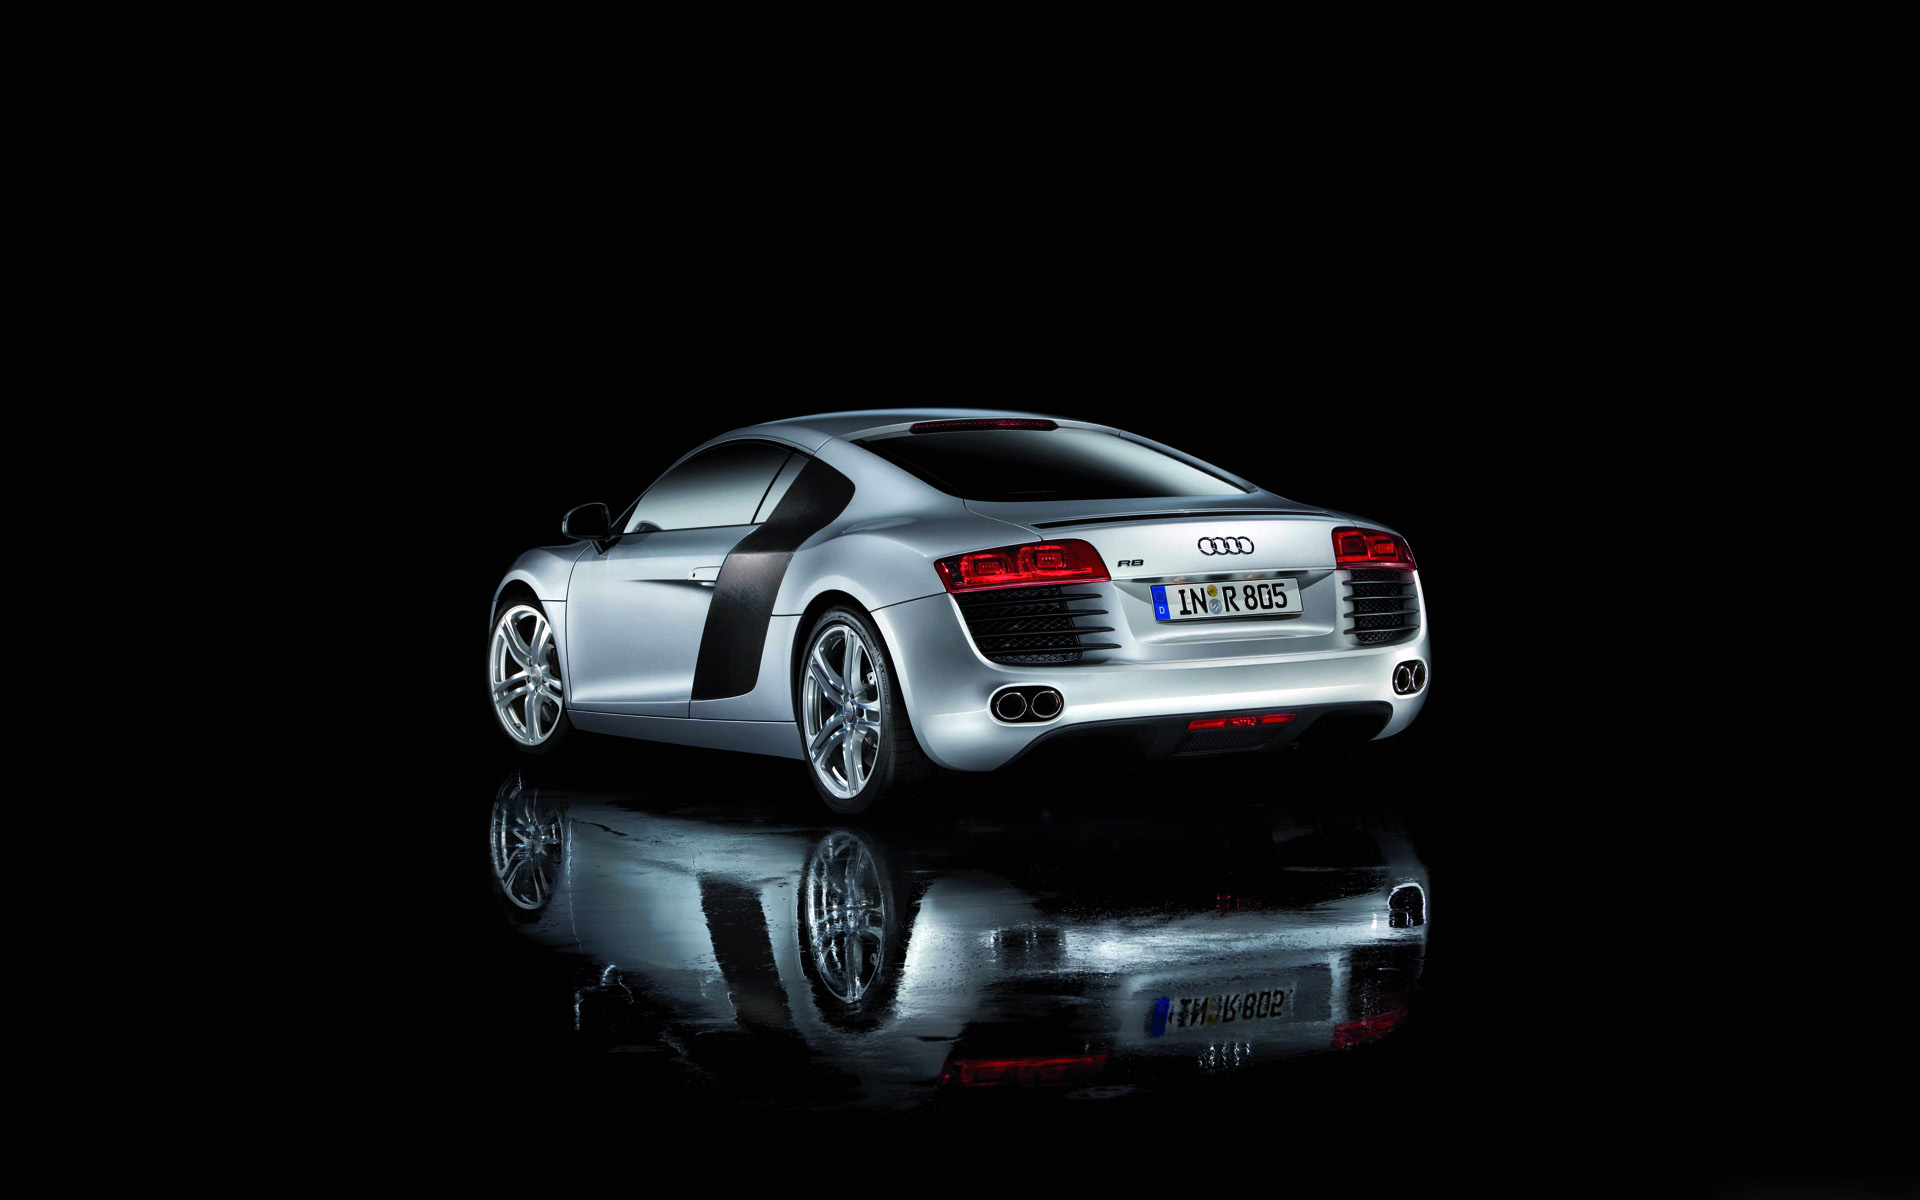  2007 Audi R8 Wallpaper.